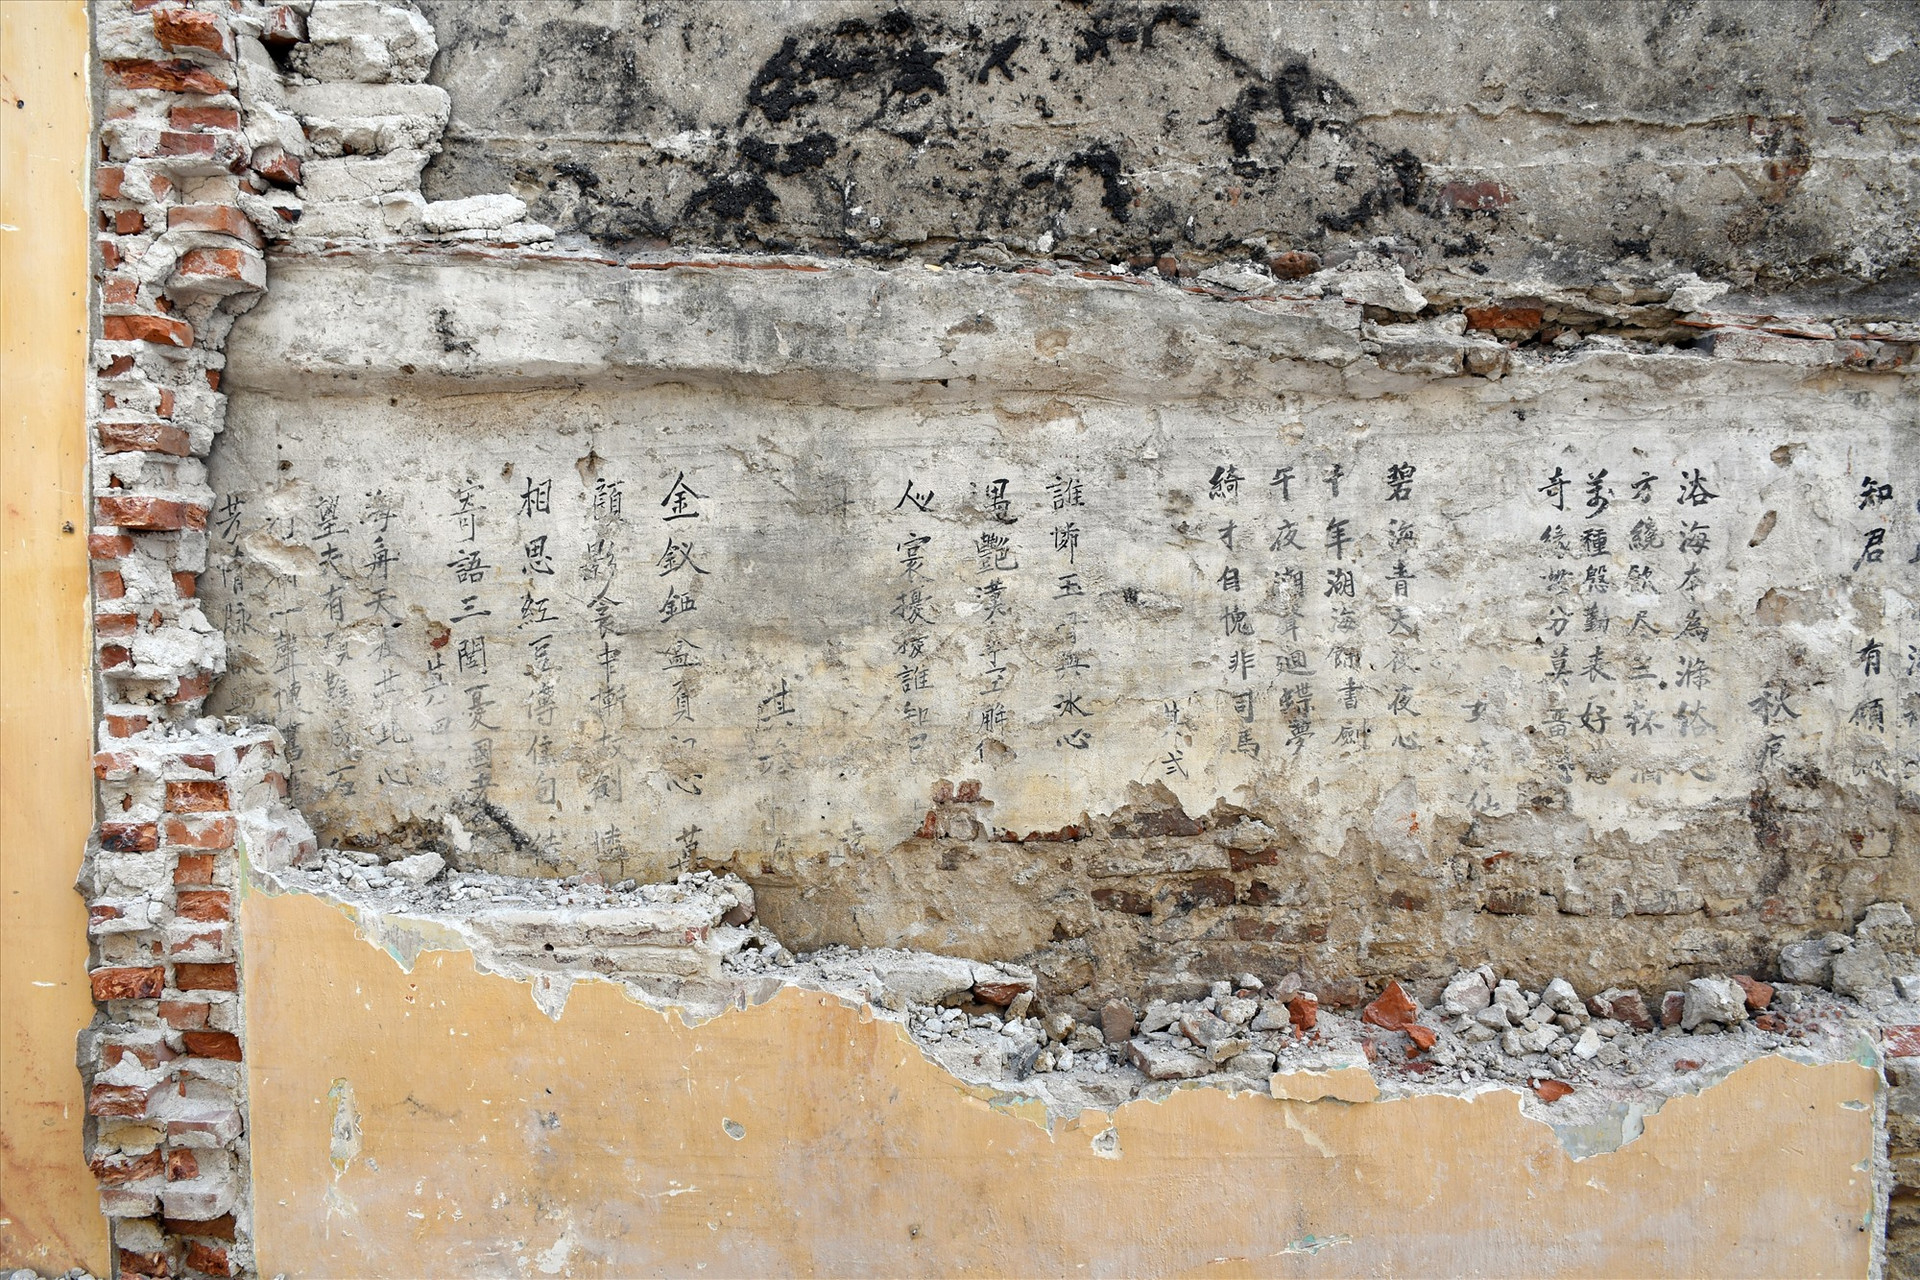 Mảng tường nhà cổ, nơi Trung tâm Quản lý Bảo tồn Di sản Văn hóa Hội An phát hiện văn bản Hán Nôm.